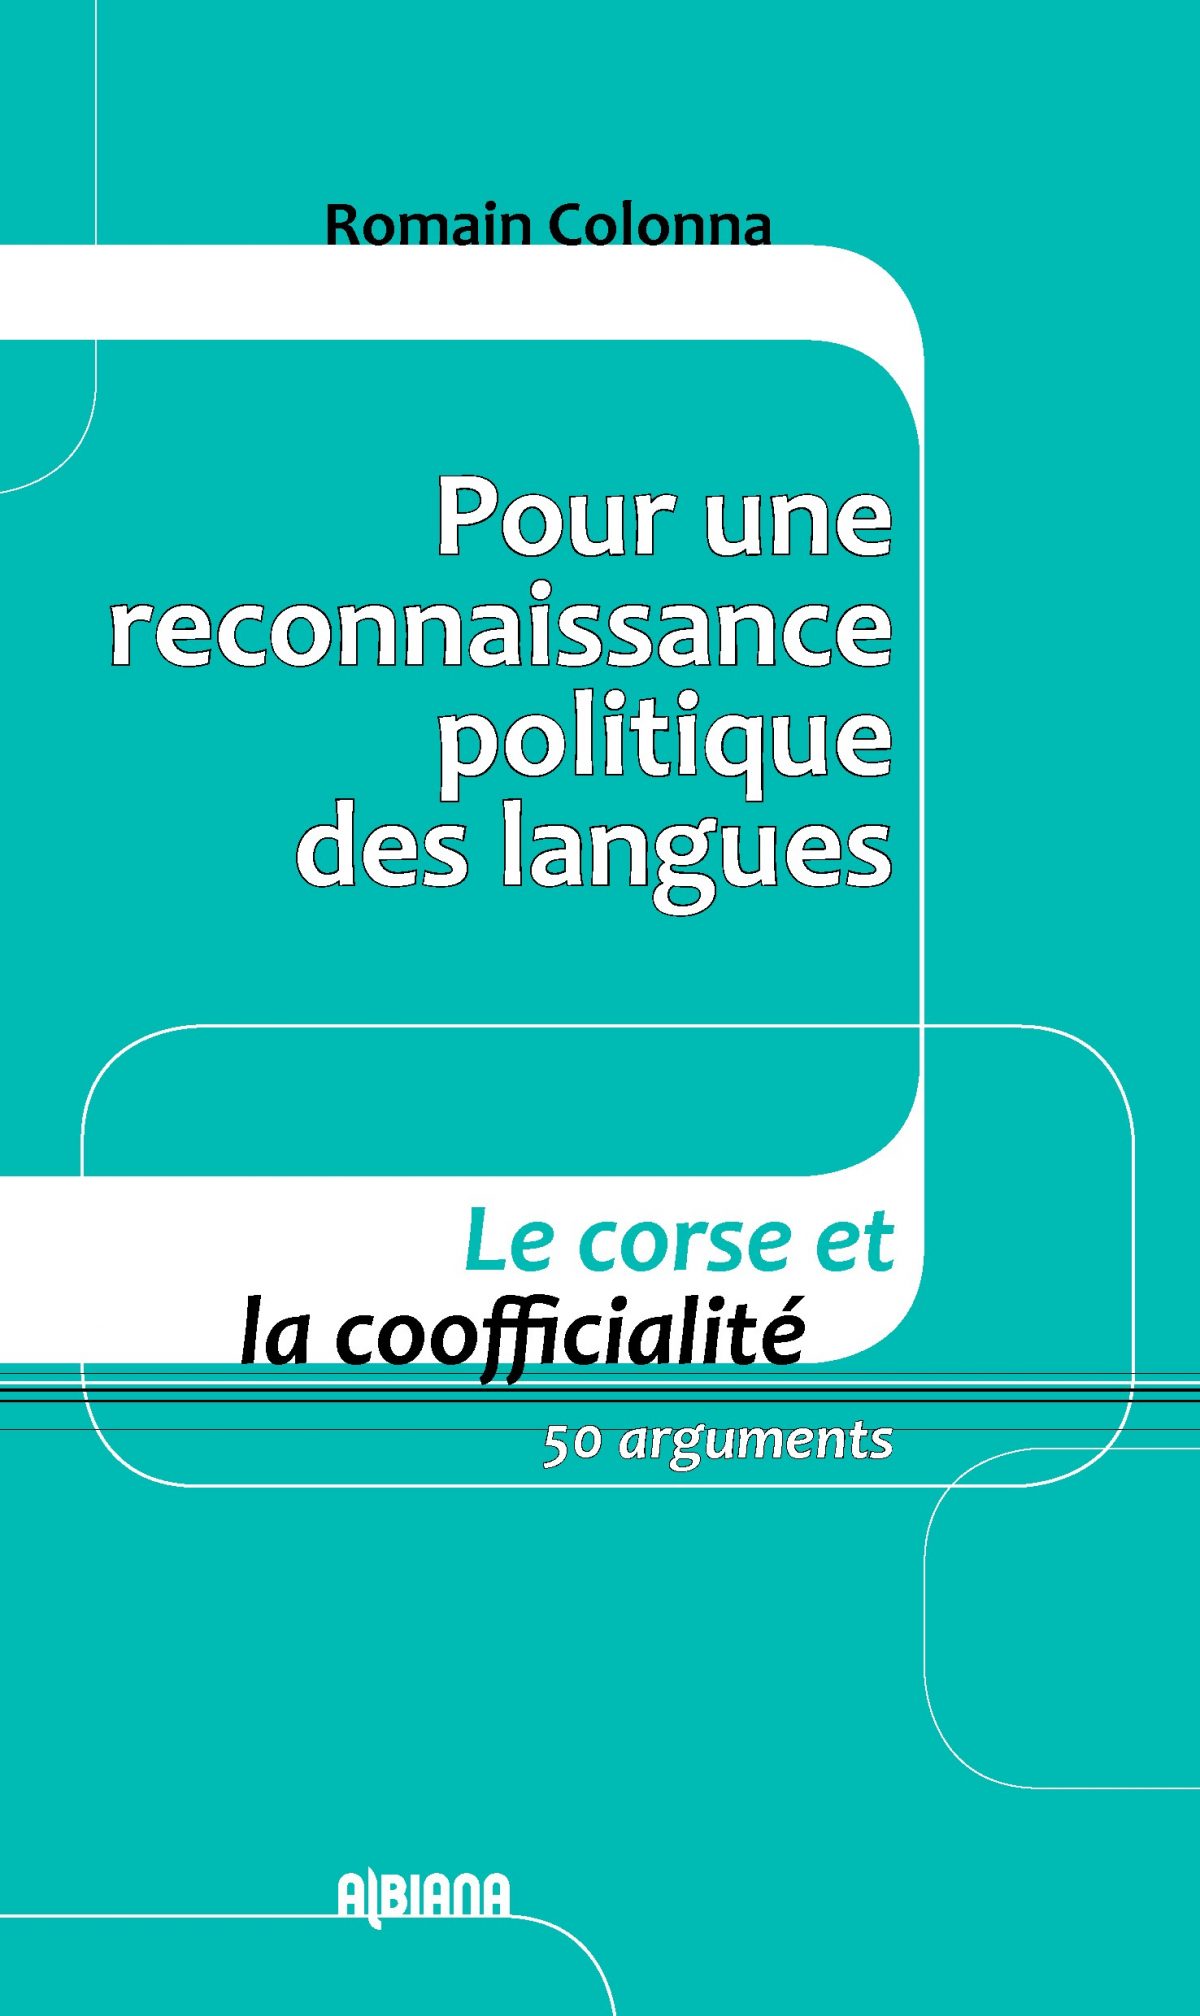 Pour une reconnaissance politique des langues – Le corse et la coofficialité – 50 arguments, Ajaccio : Albiana, 2018.